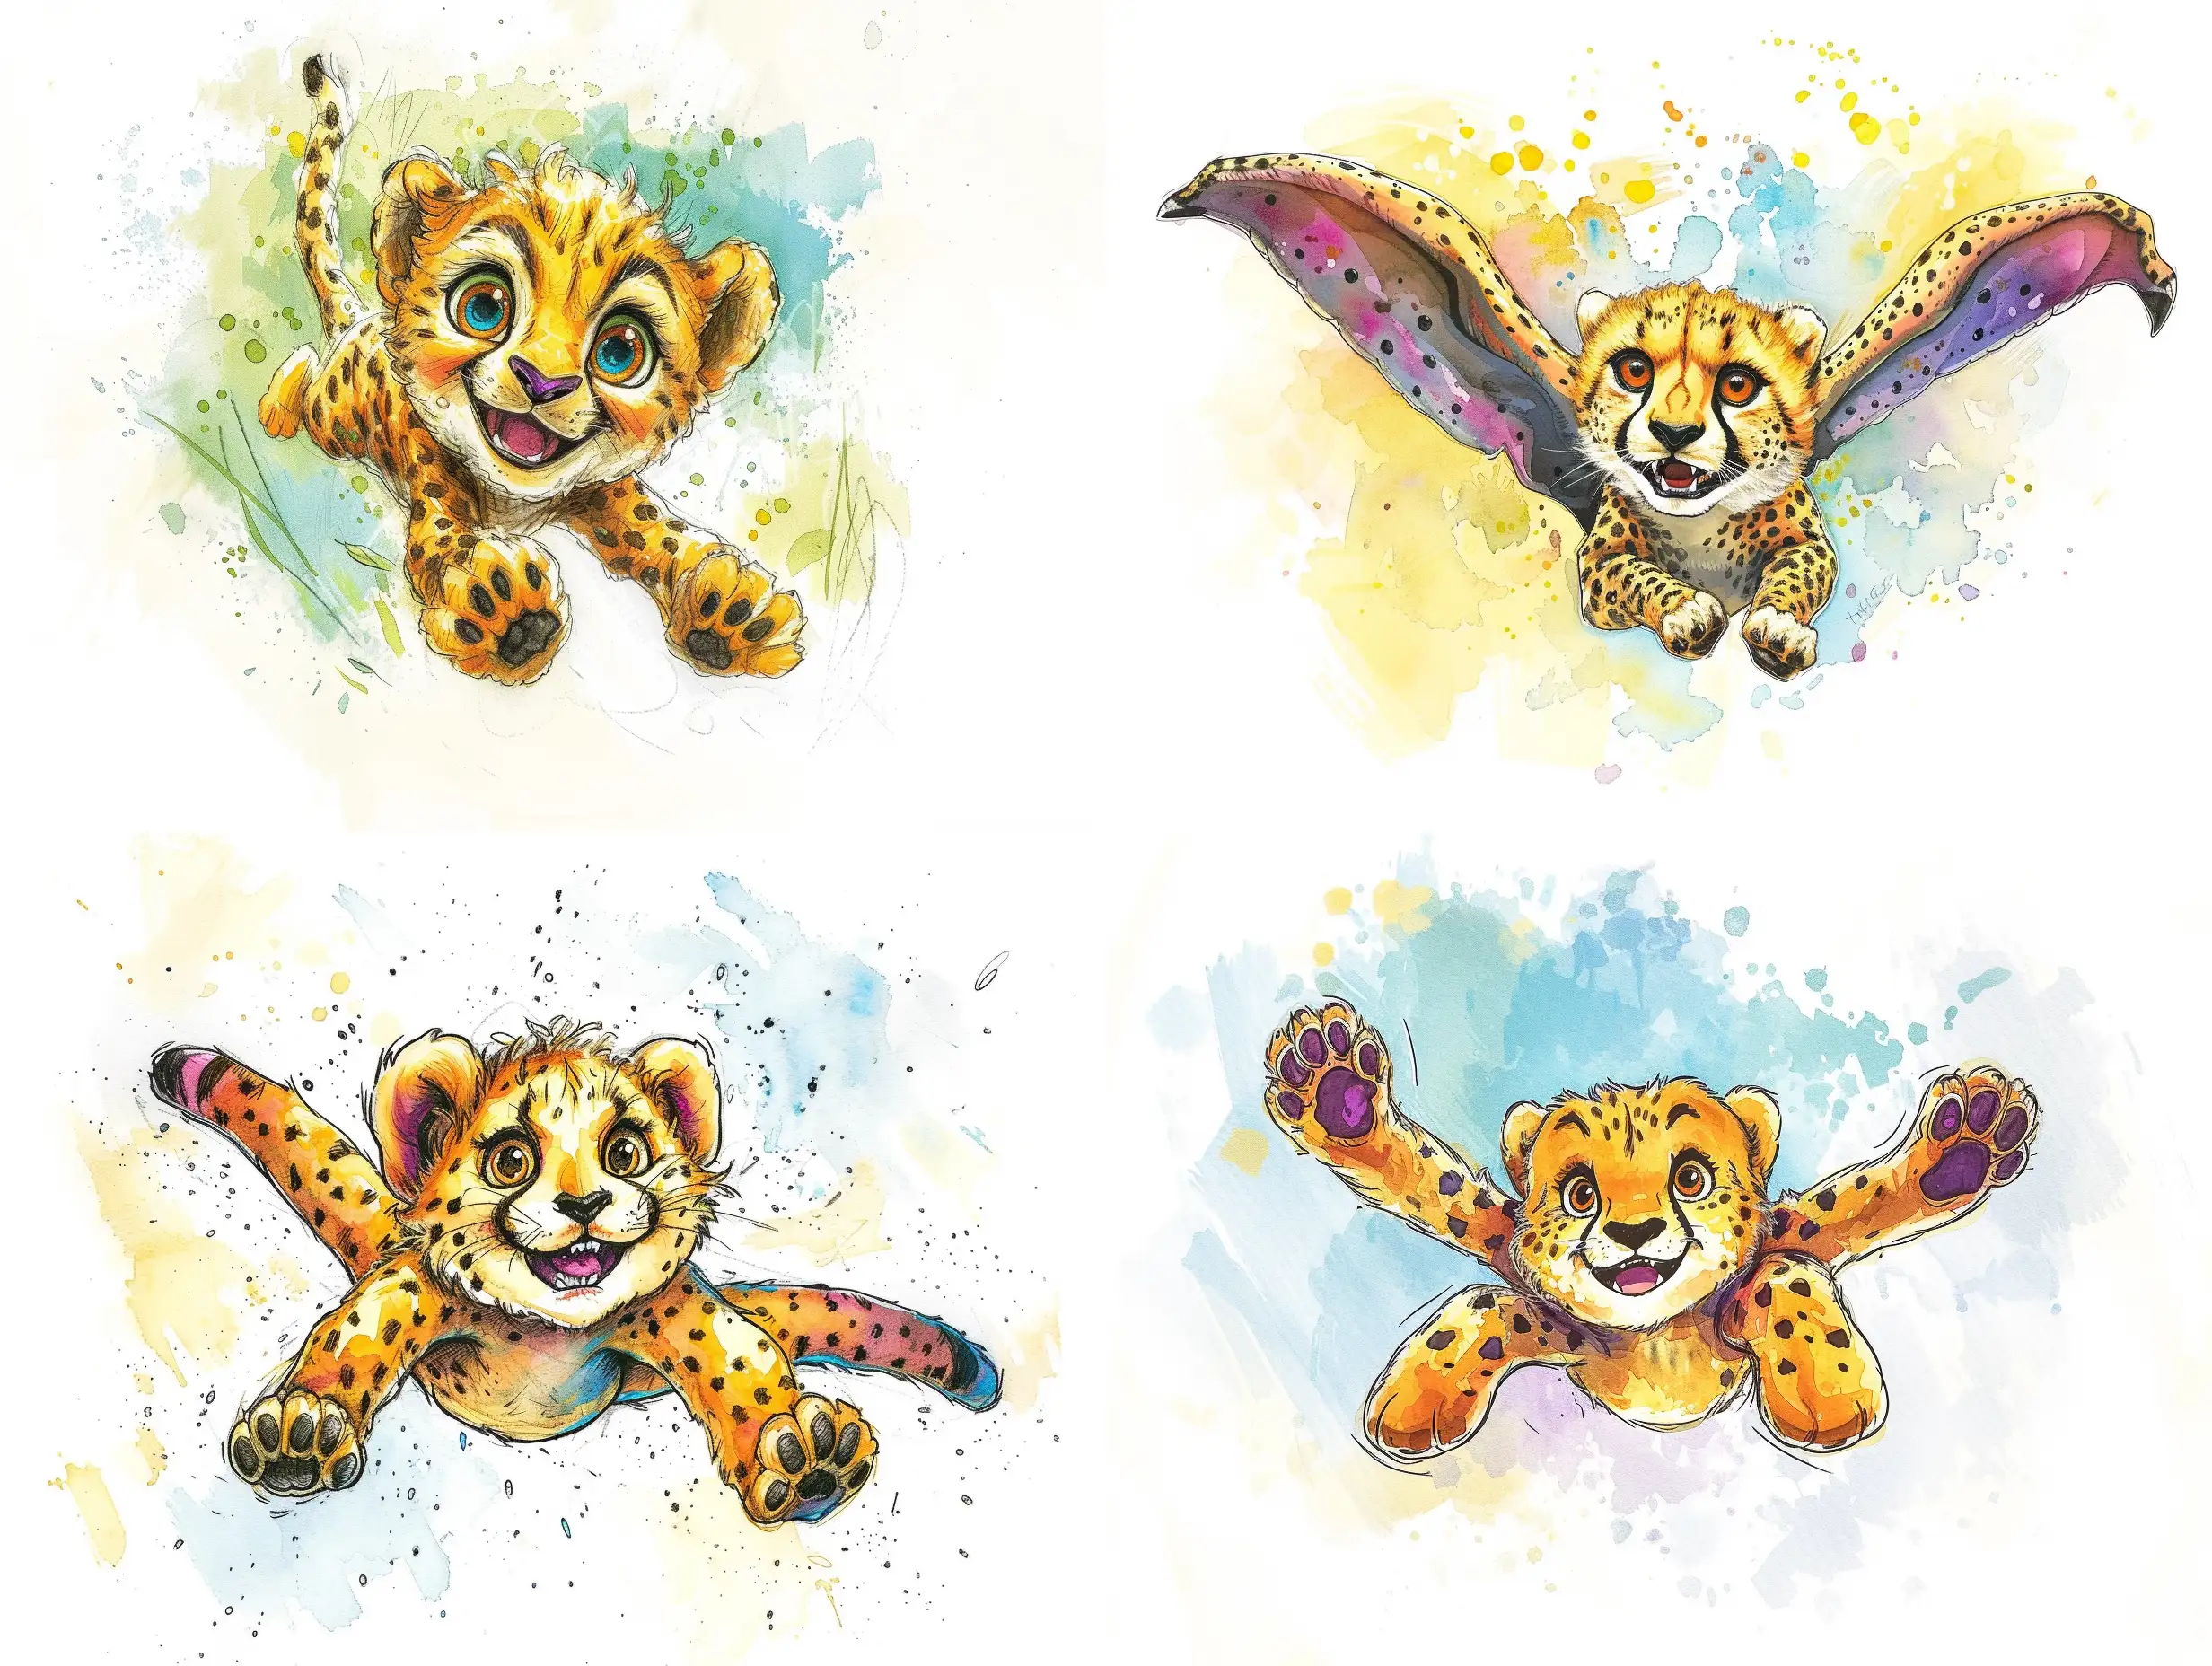 Joyful-Cheetah-Soars-in-Tim-Burtoninspired-Watercolor-Caricature